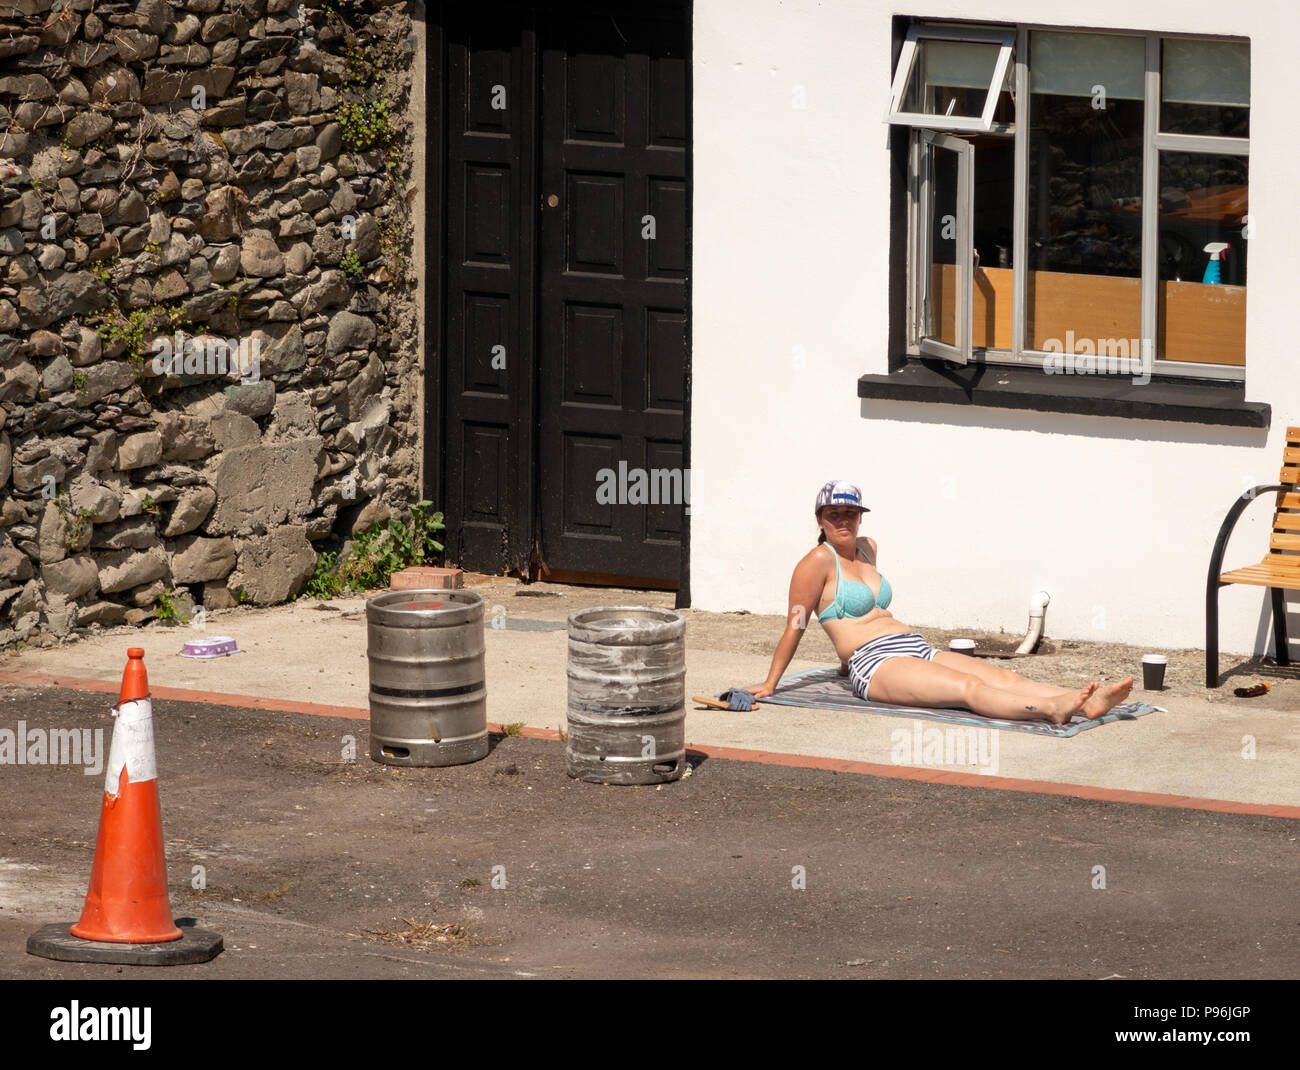 Heatwave Irland junge Frau genießt Sonnenbaden auf lustige Art und Weise auf Betonoberfläche im Hinterhof des Hauses als urban lustig ungewöhnlich Sonnenbaden. Stockfoto